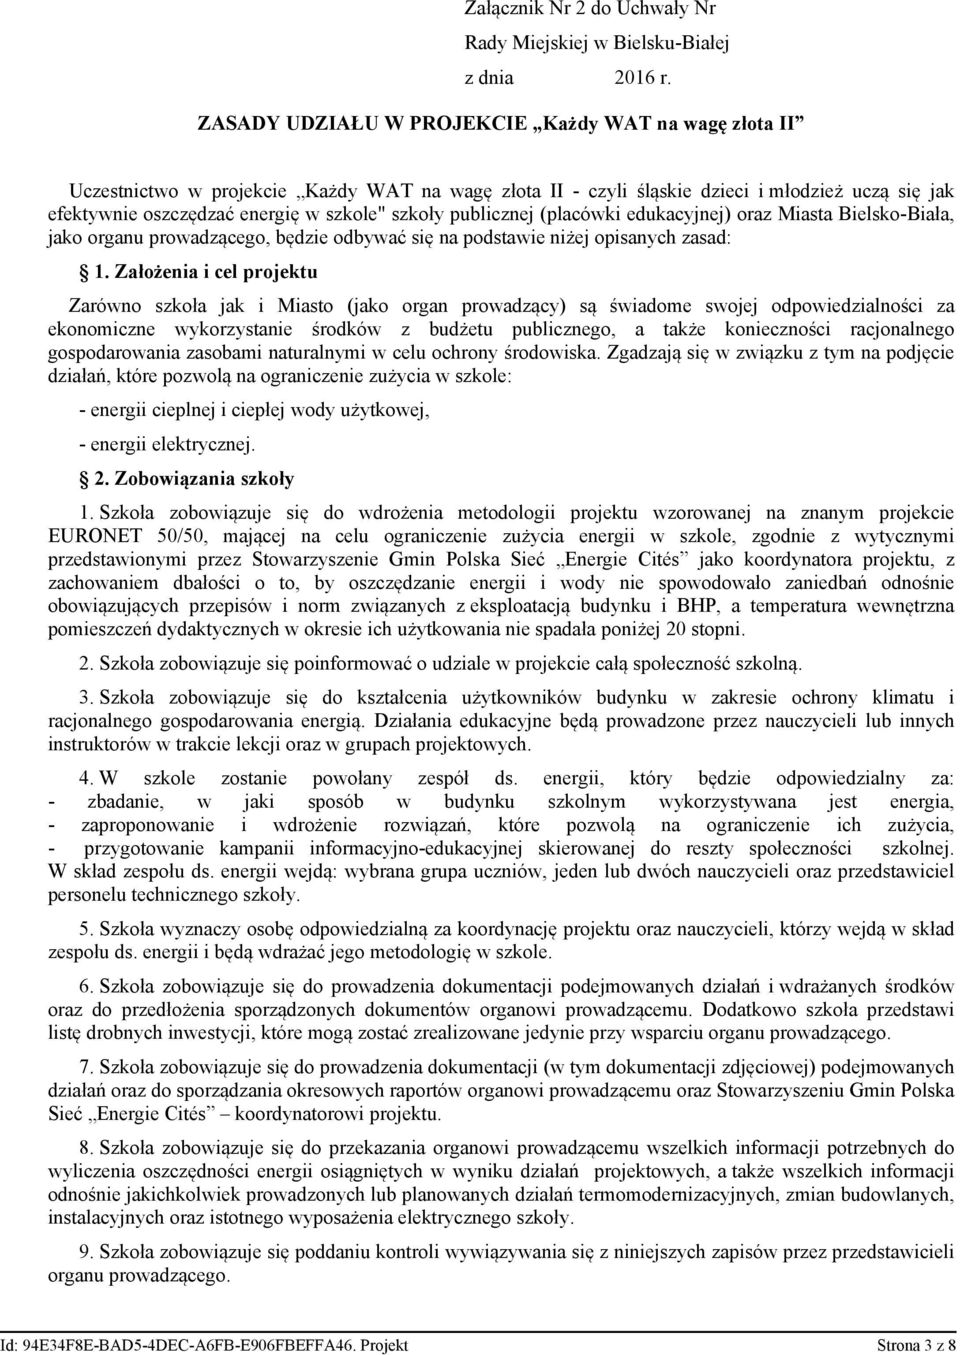 publicznej (placówki edukacyjnej) oraz Miasta Bielsko-Biała, jako organu prowadzącego, będzie odbywać się na podstawie niżej opisanych zasad: 1.